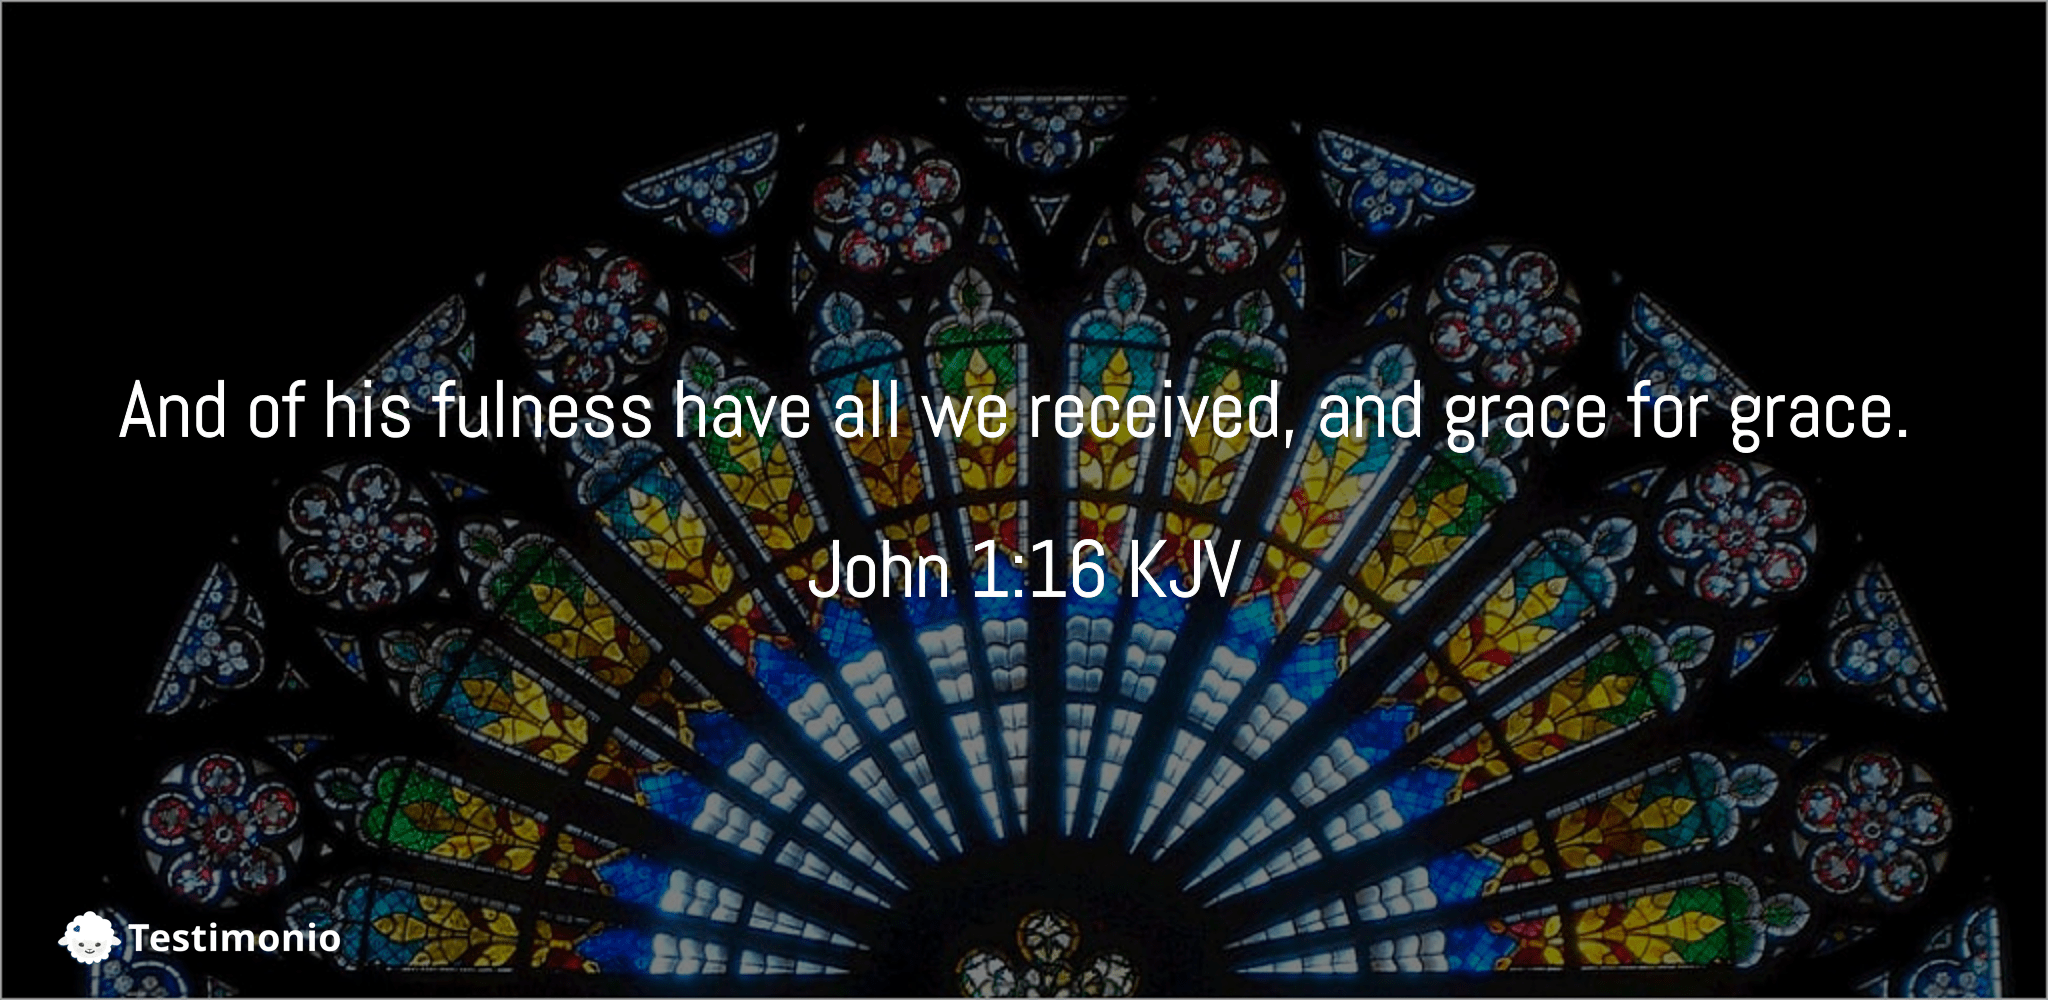 John 1:16